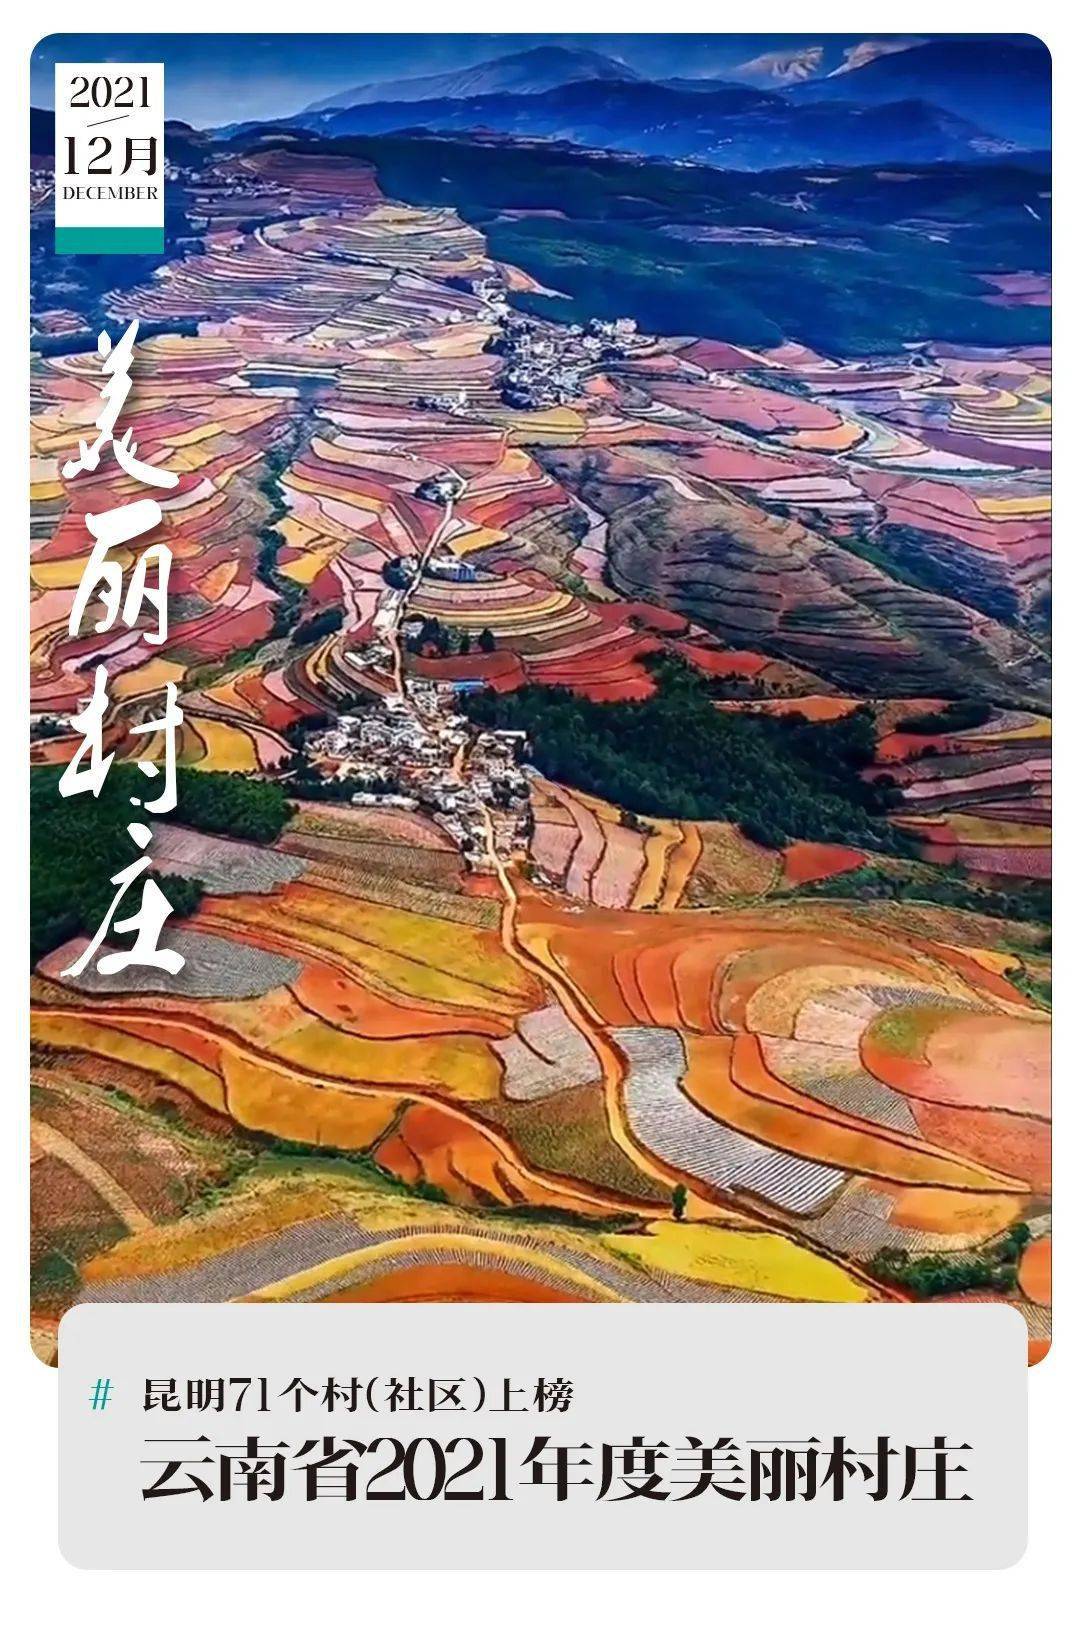 昆明|昆明71个村(社区)上榜云南省2021年度美丽村庄 | 昆明文旅动态